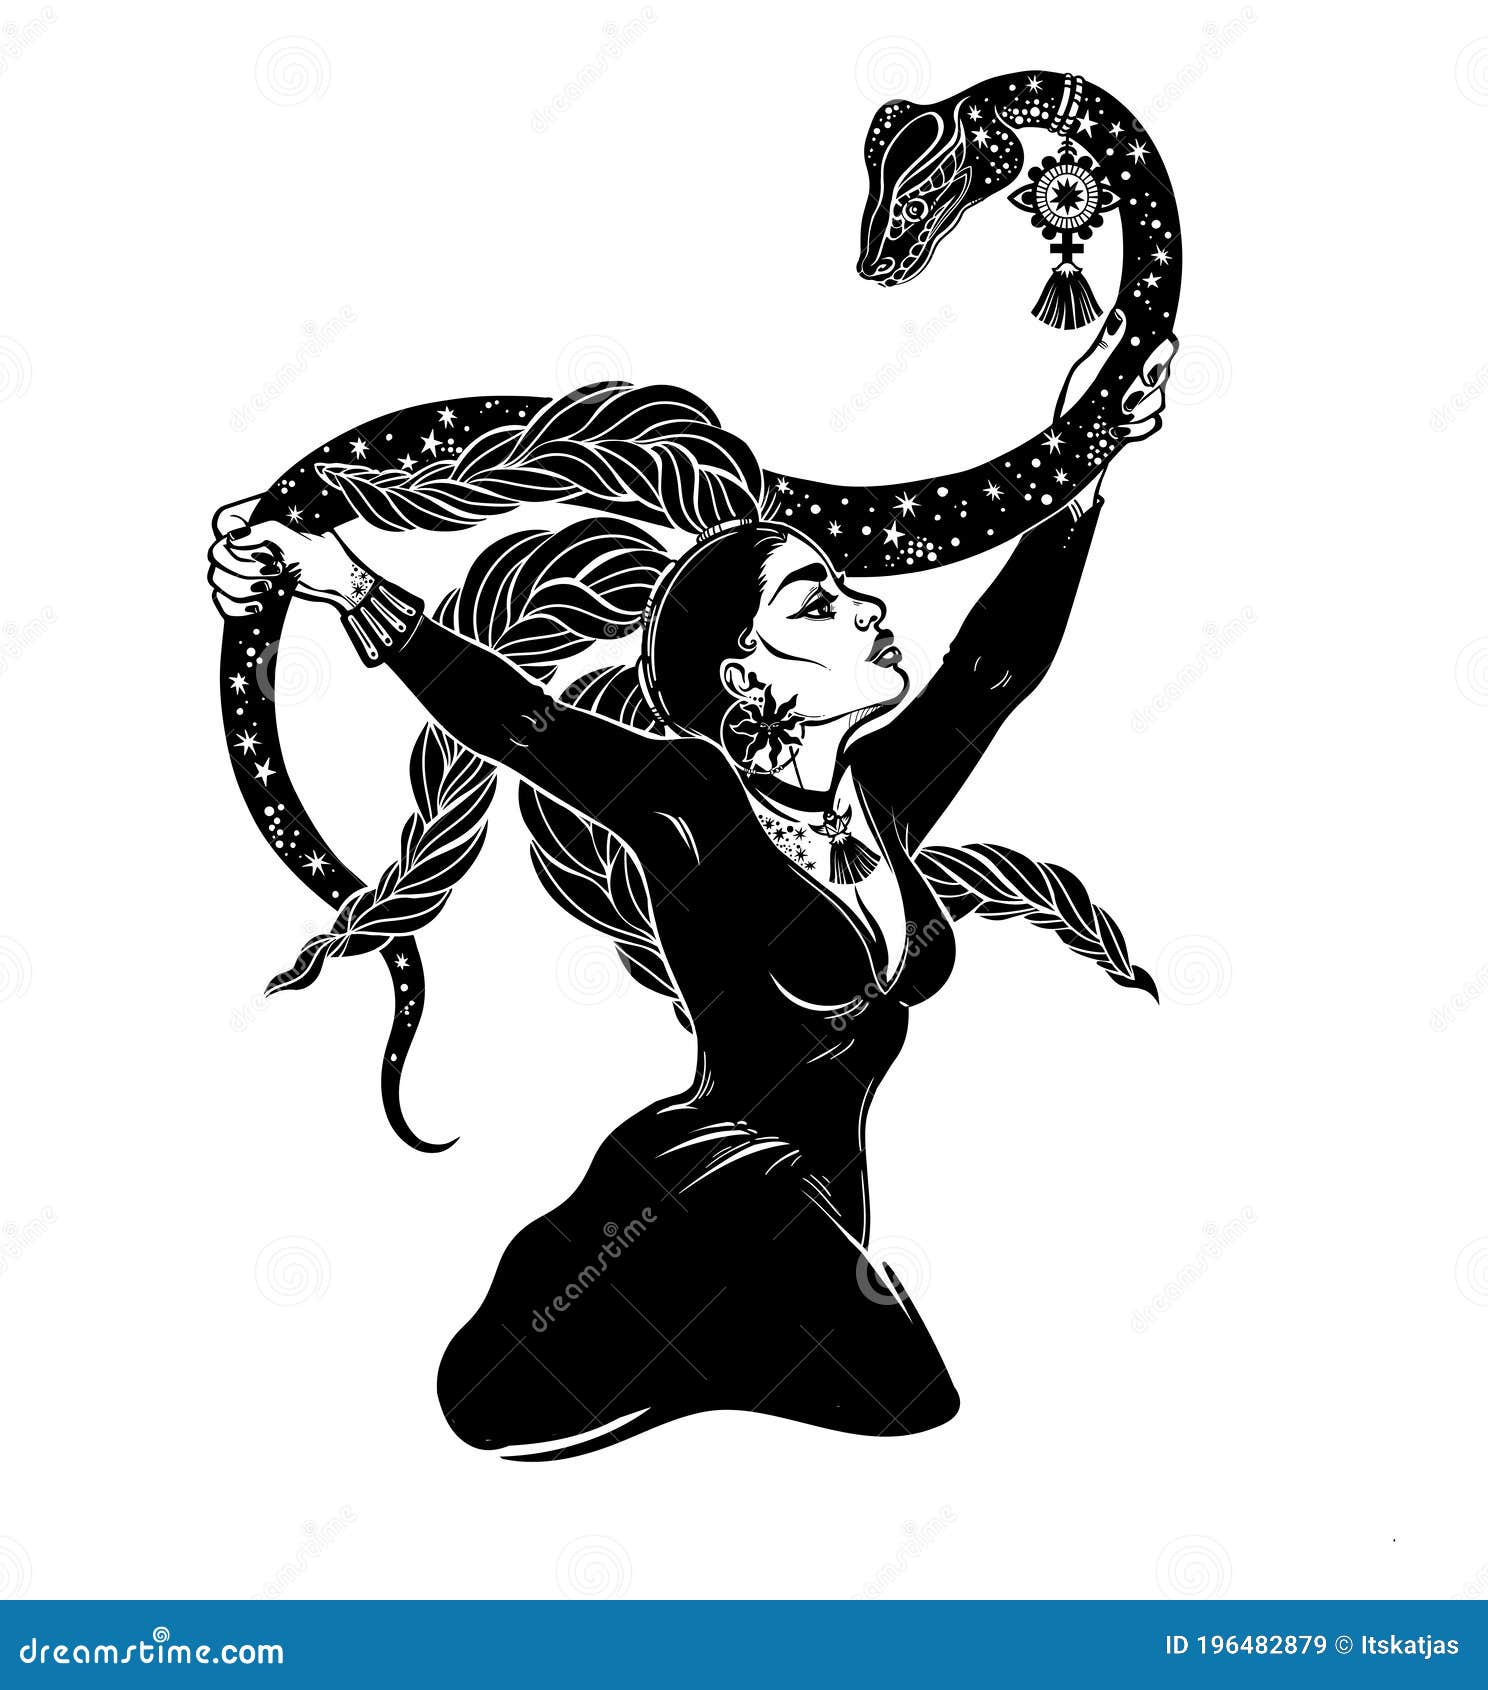 Sussurro de uma cobra - desenho enganoso de uma mulher